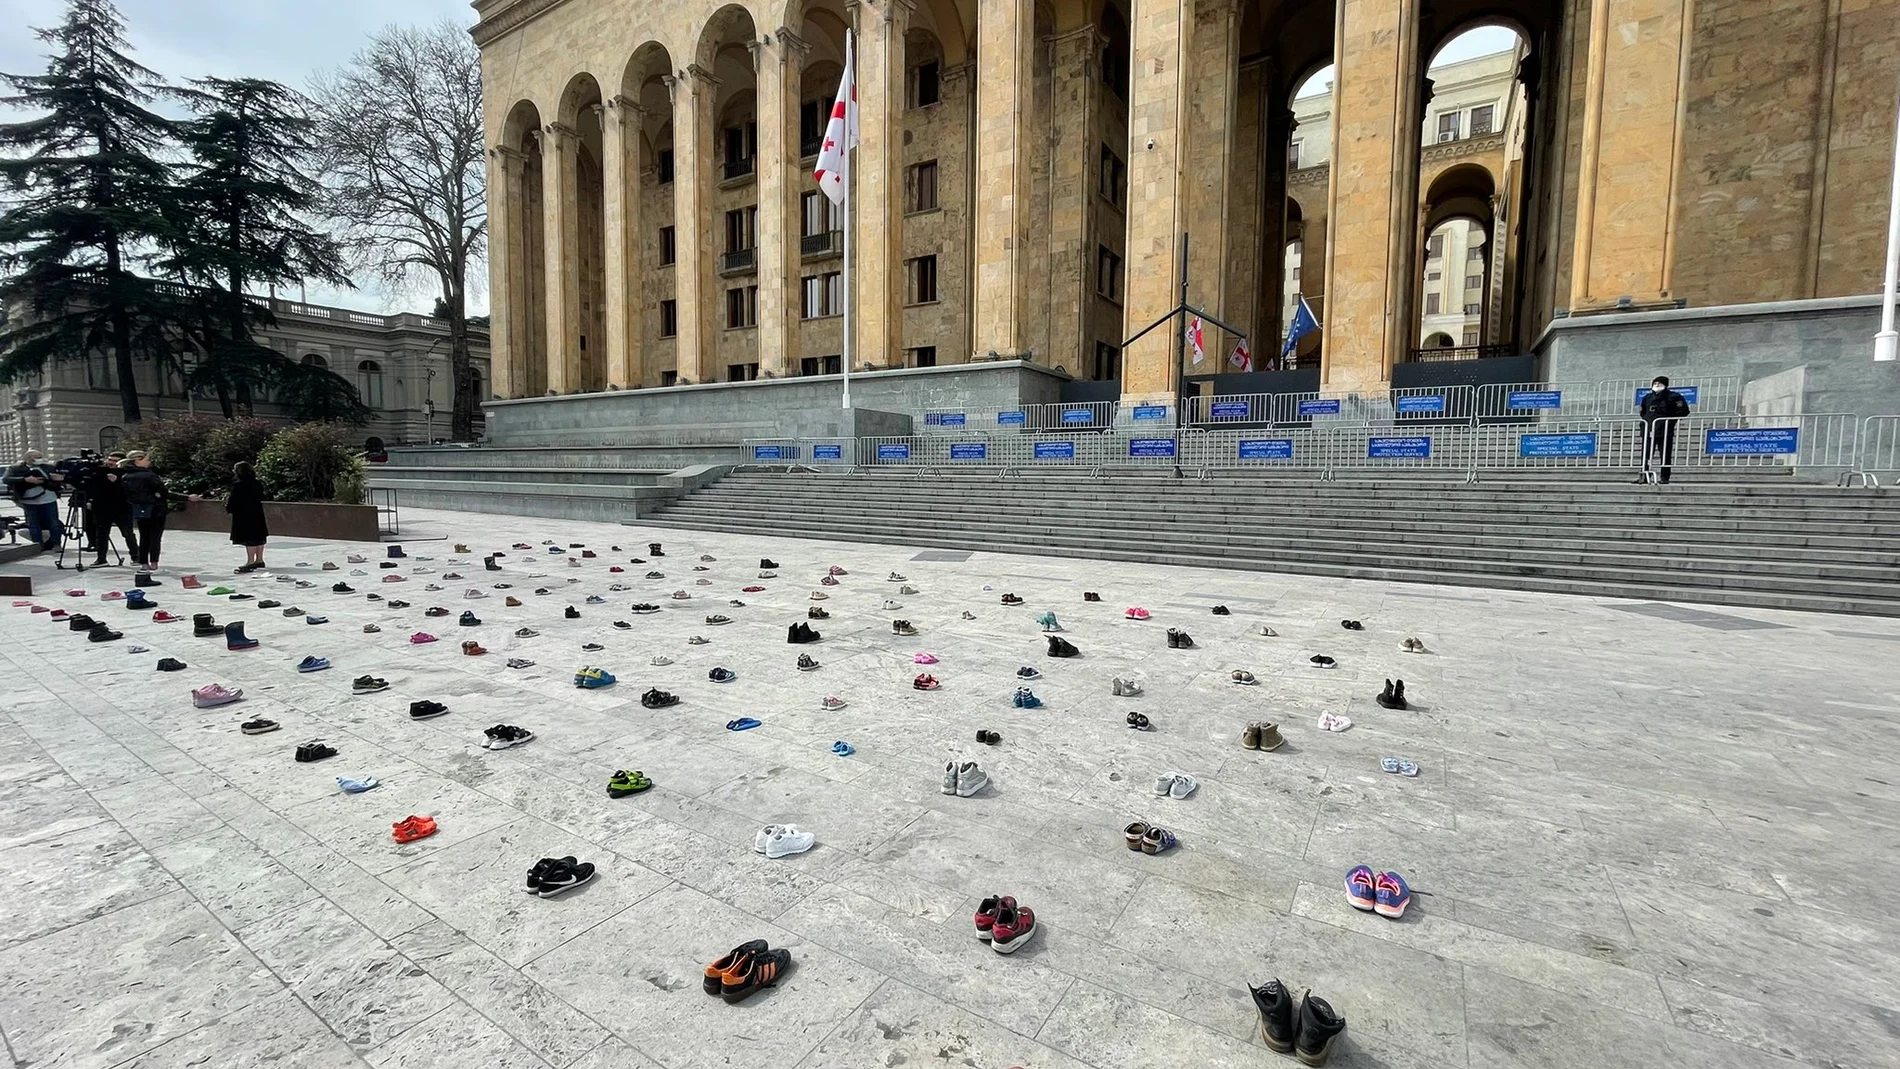 Homenaje en Georgia: 145 pares de zapatos infantiles recuerdan a los niños que han muerto en la guerra en Ucrania